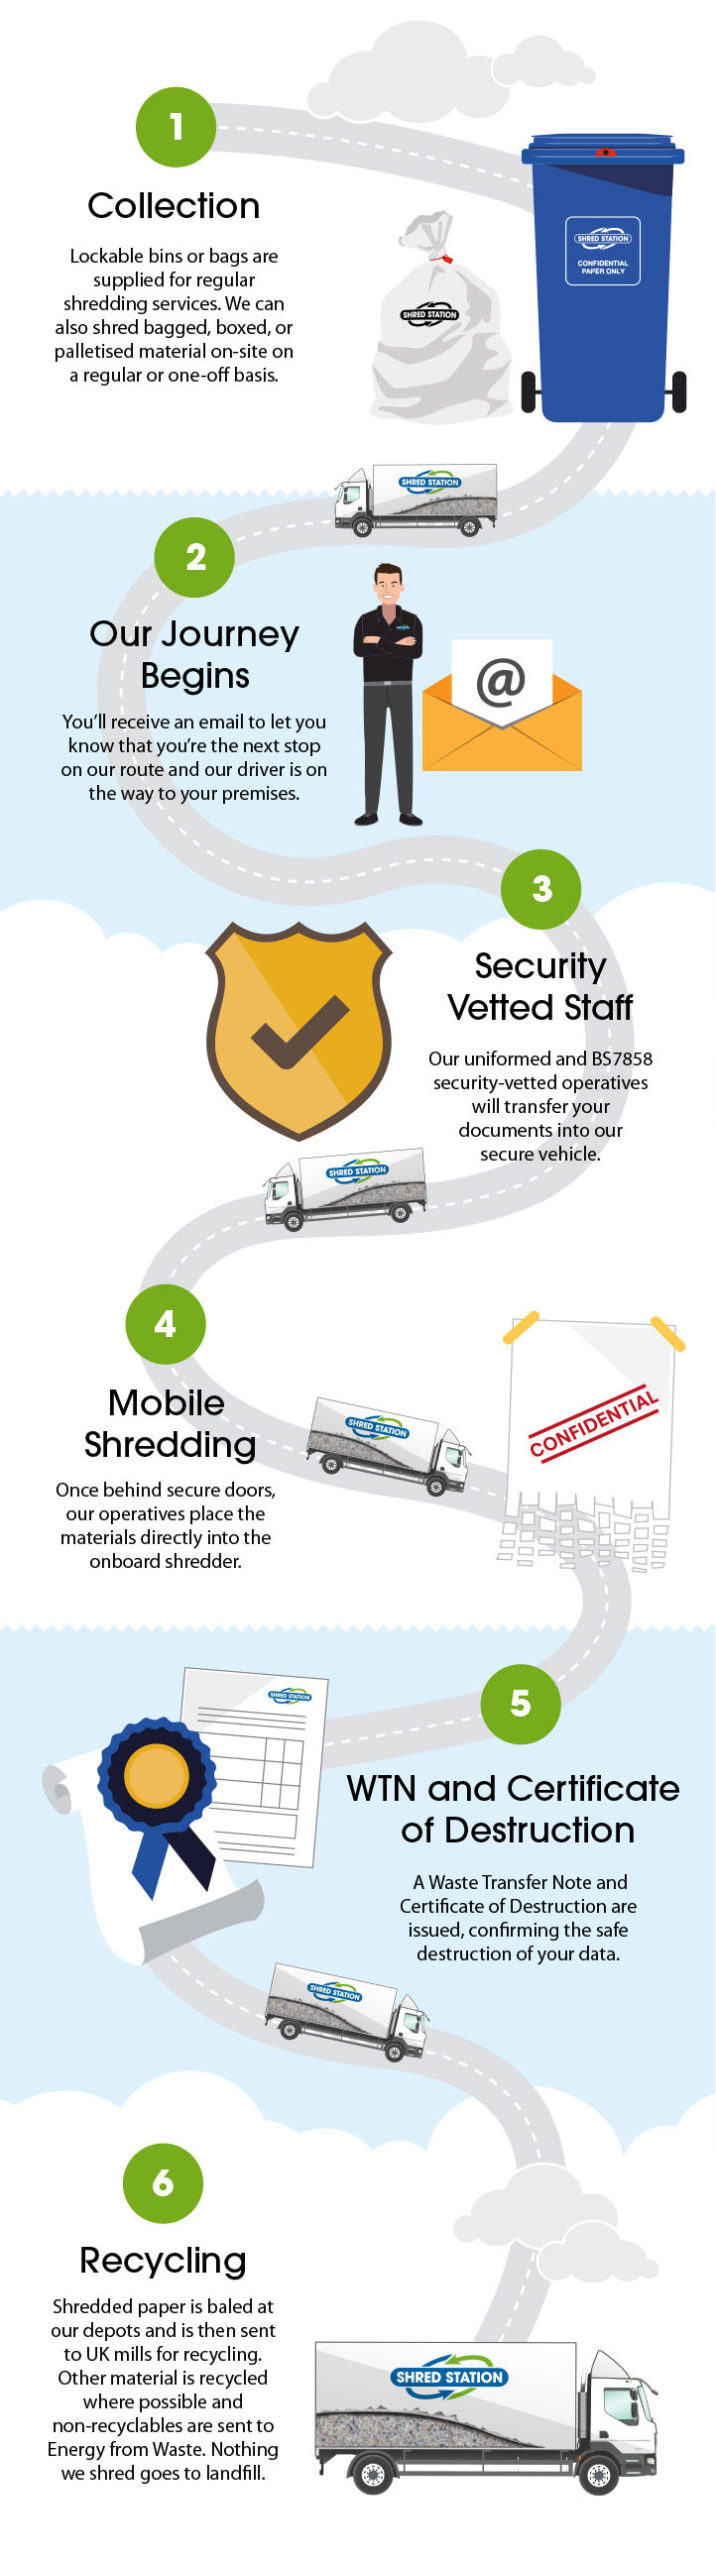 Mobile Shredding Infographic